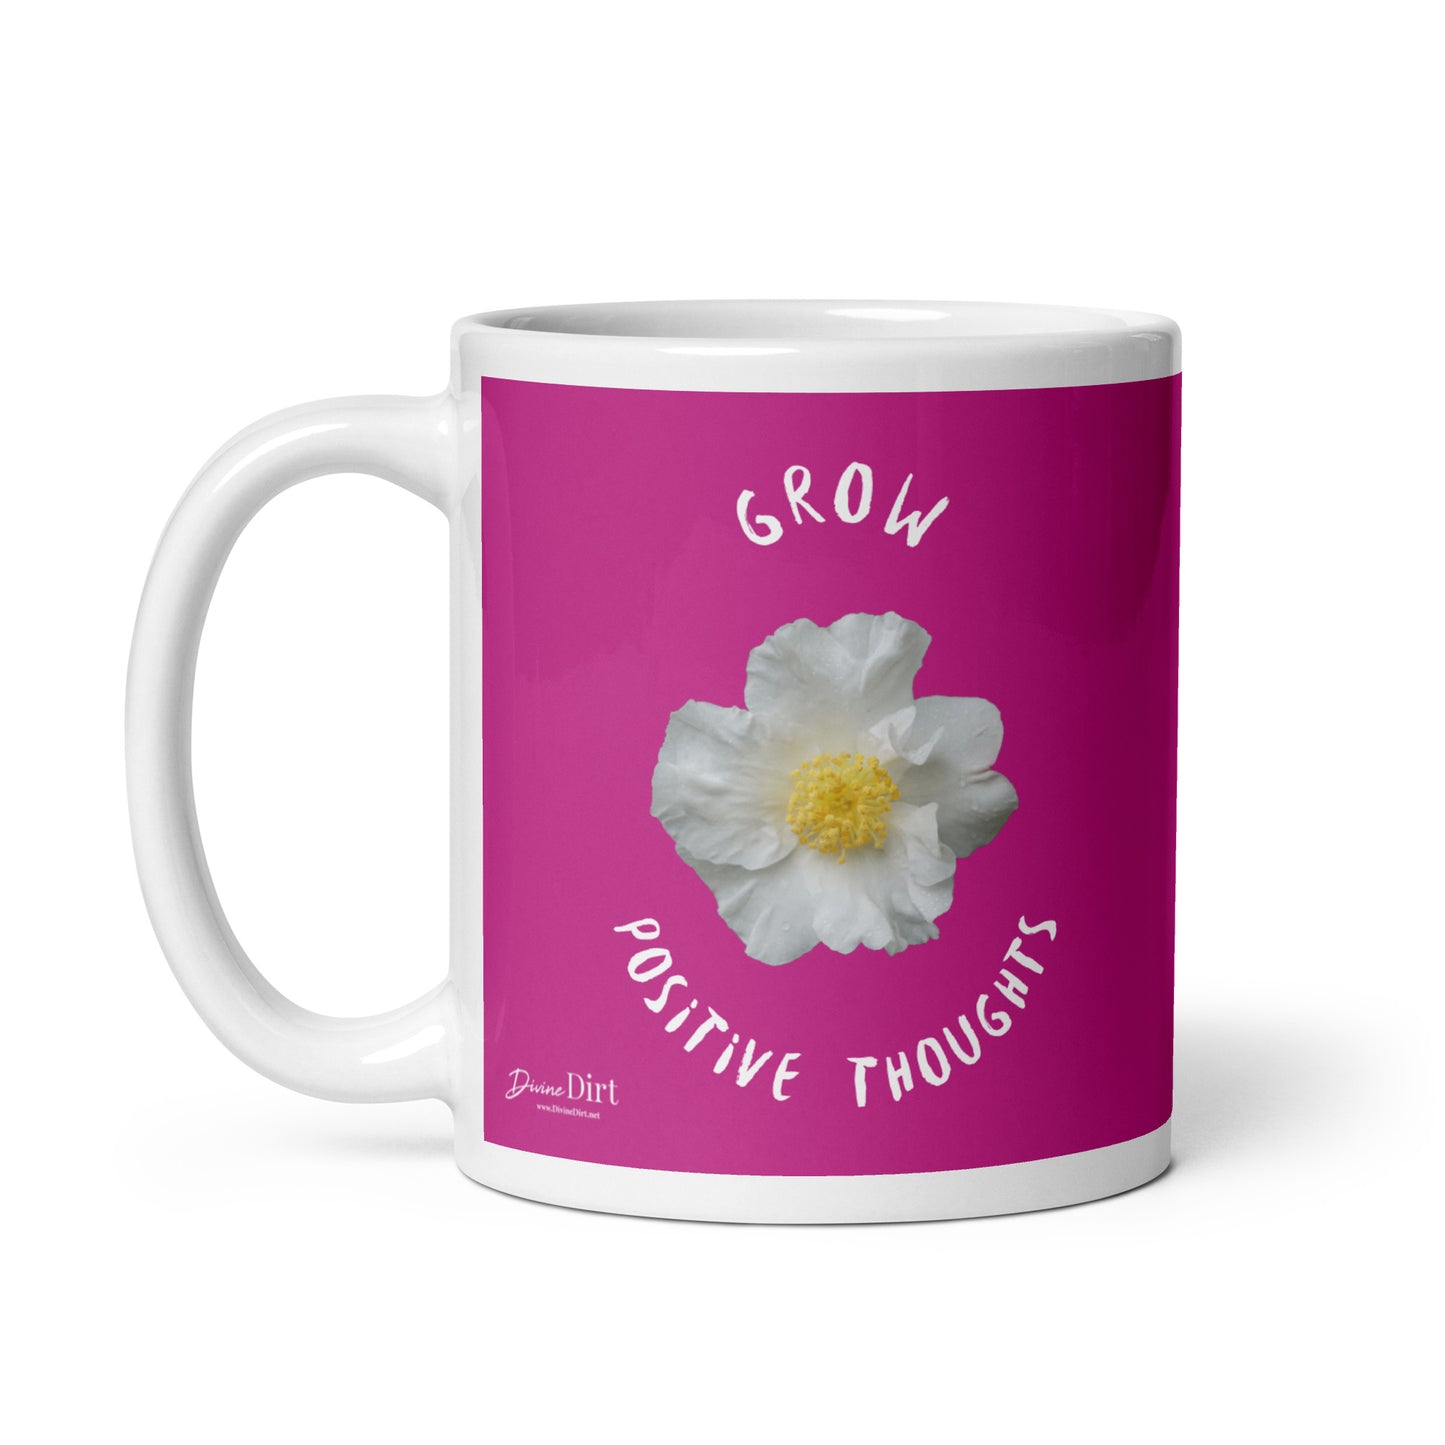 Grow Positive Thoughts mug (11oz, 15oz)